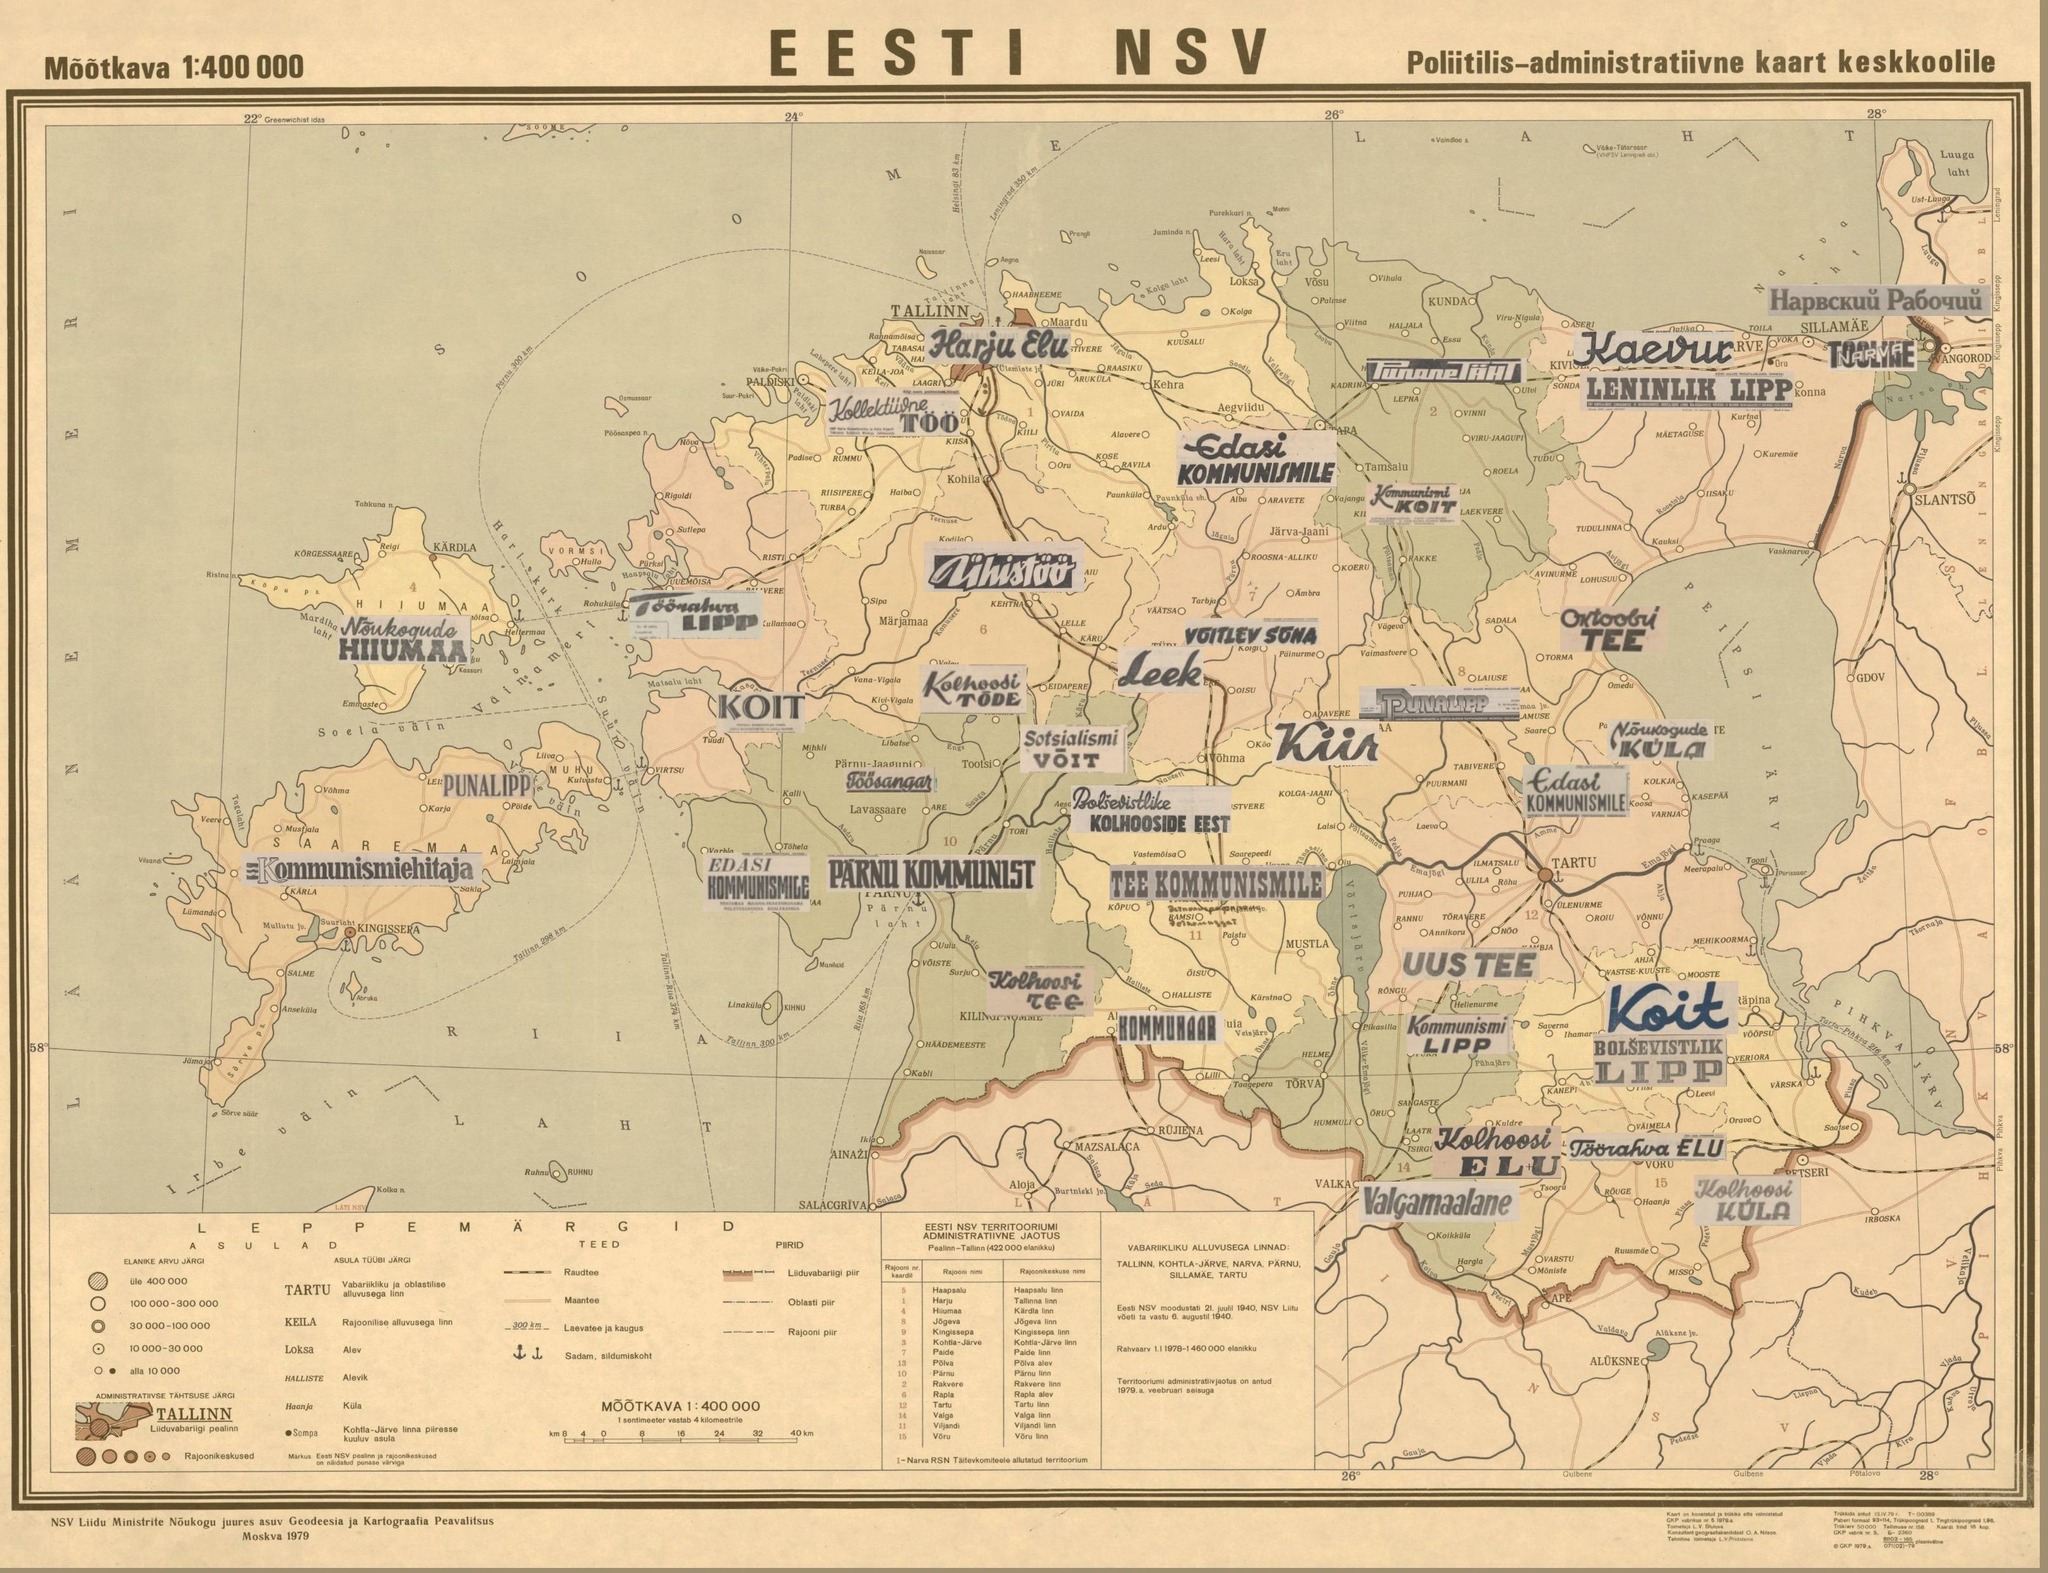 Eesti kaart koos erinevates linnades ilmunud ajalehtedega, autor Helle Maaslieb